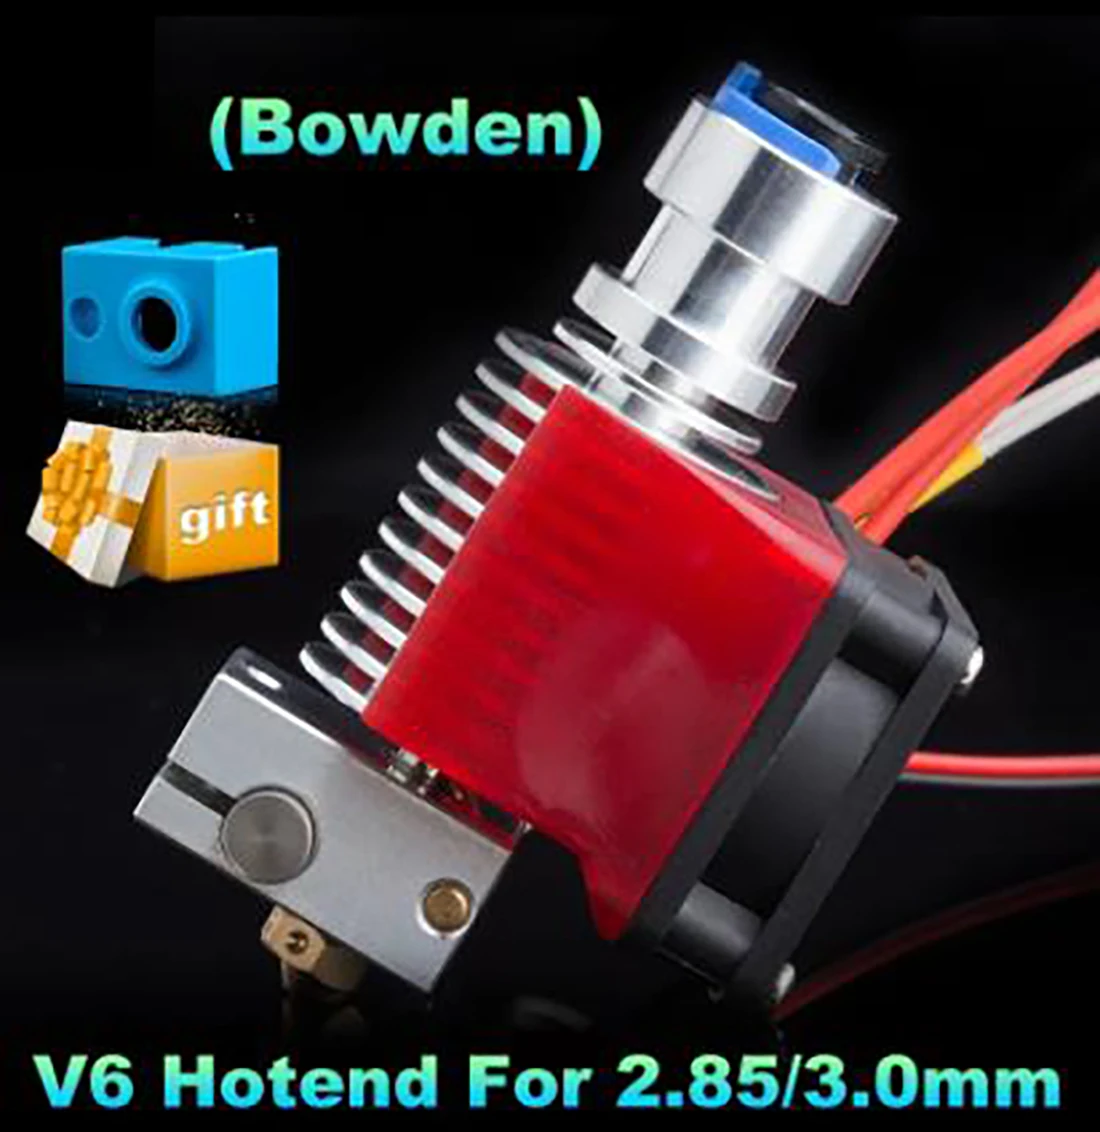 

V6 2.85/3.0mm Hotend 12V/24V Remote Bowen Print J-head Hotend And Cooling Fan Bracket For HOTEND For PT100 3D Printer Parts